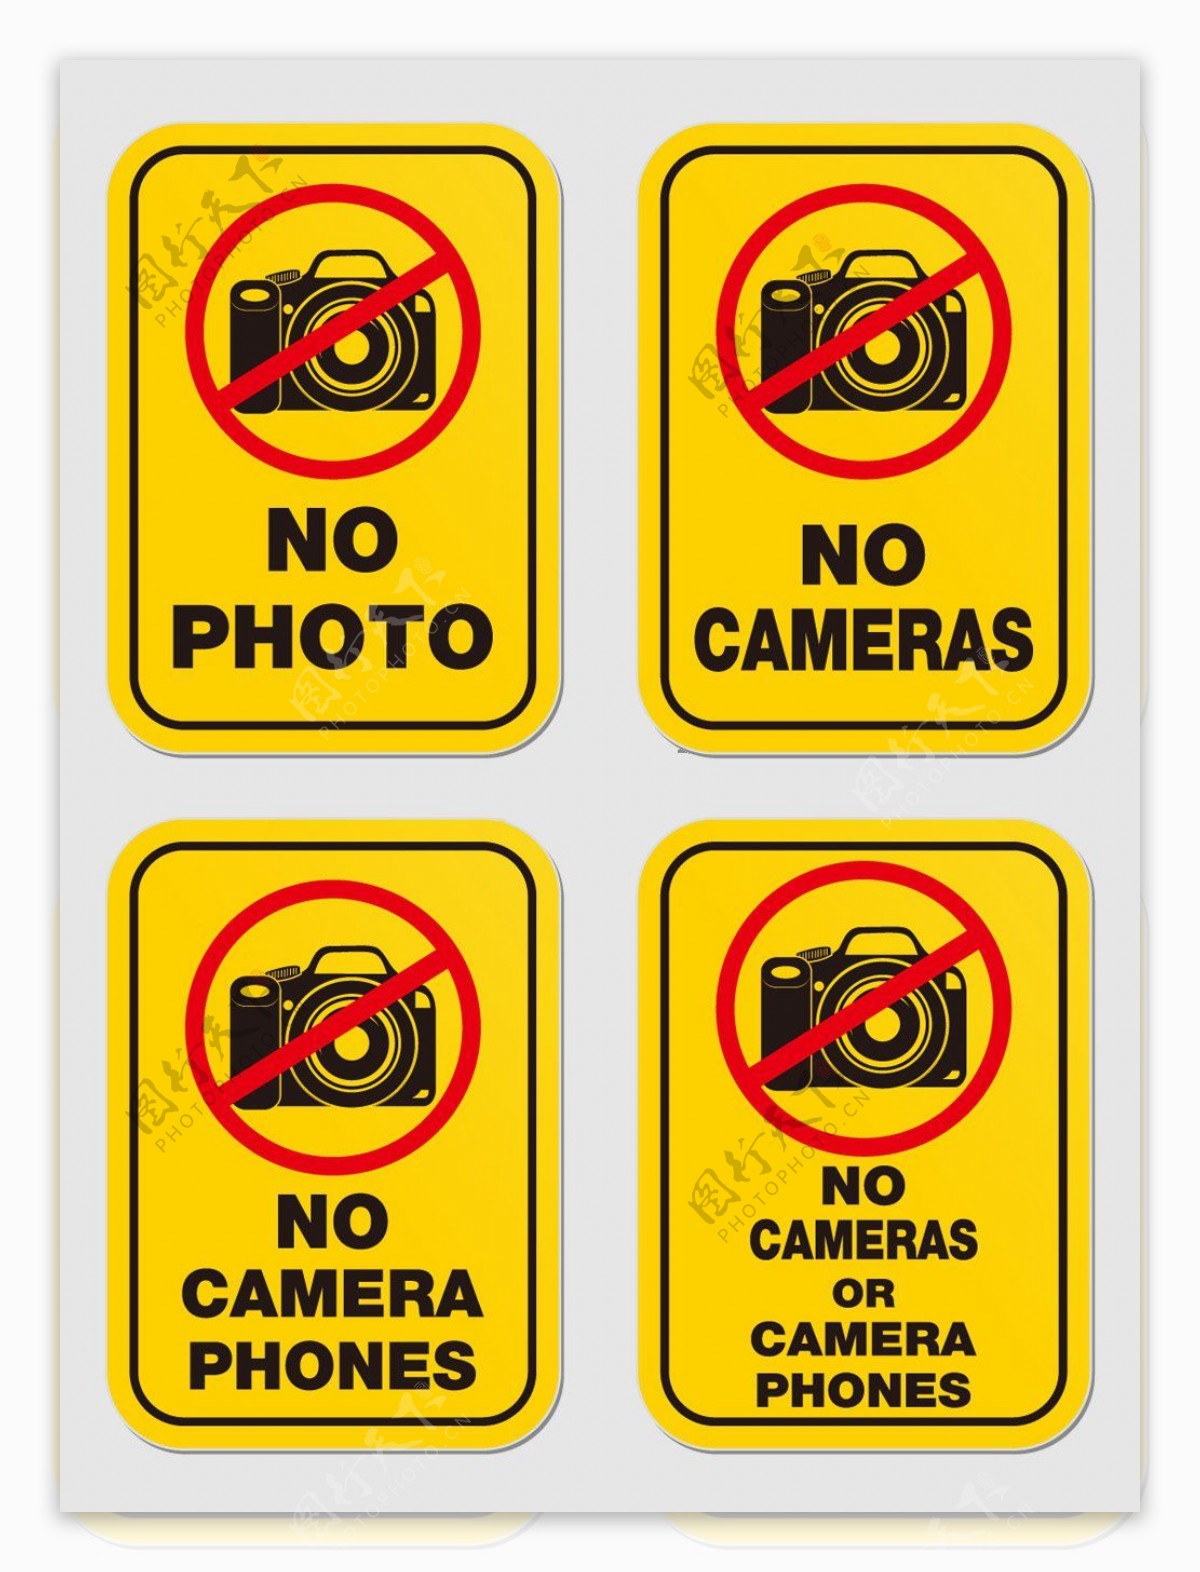 禁止拍照标识牌矢量素材